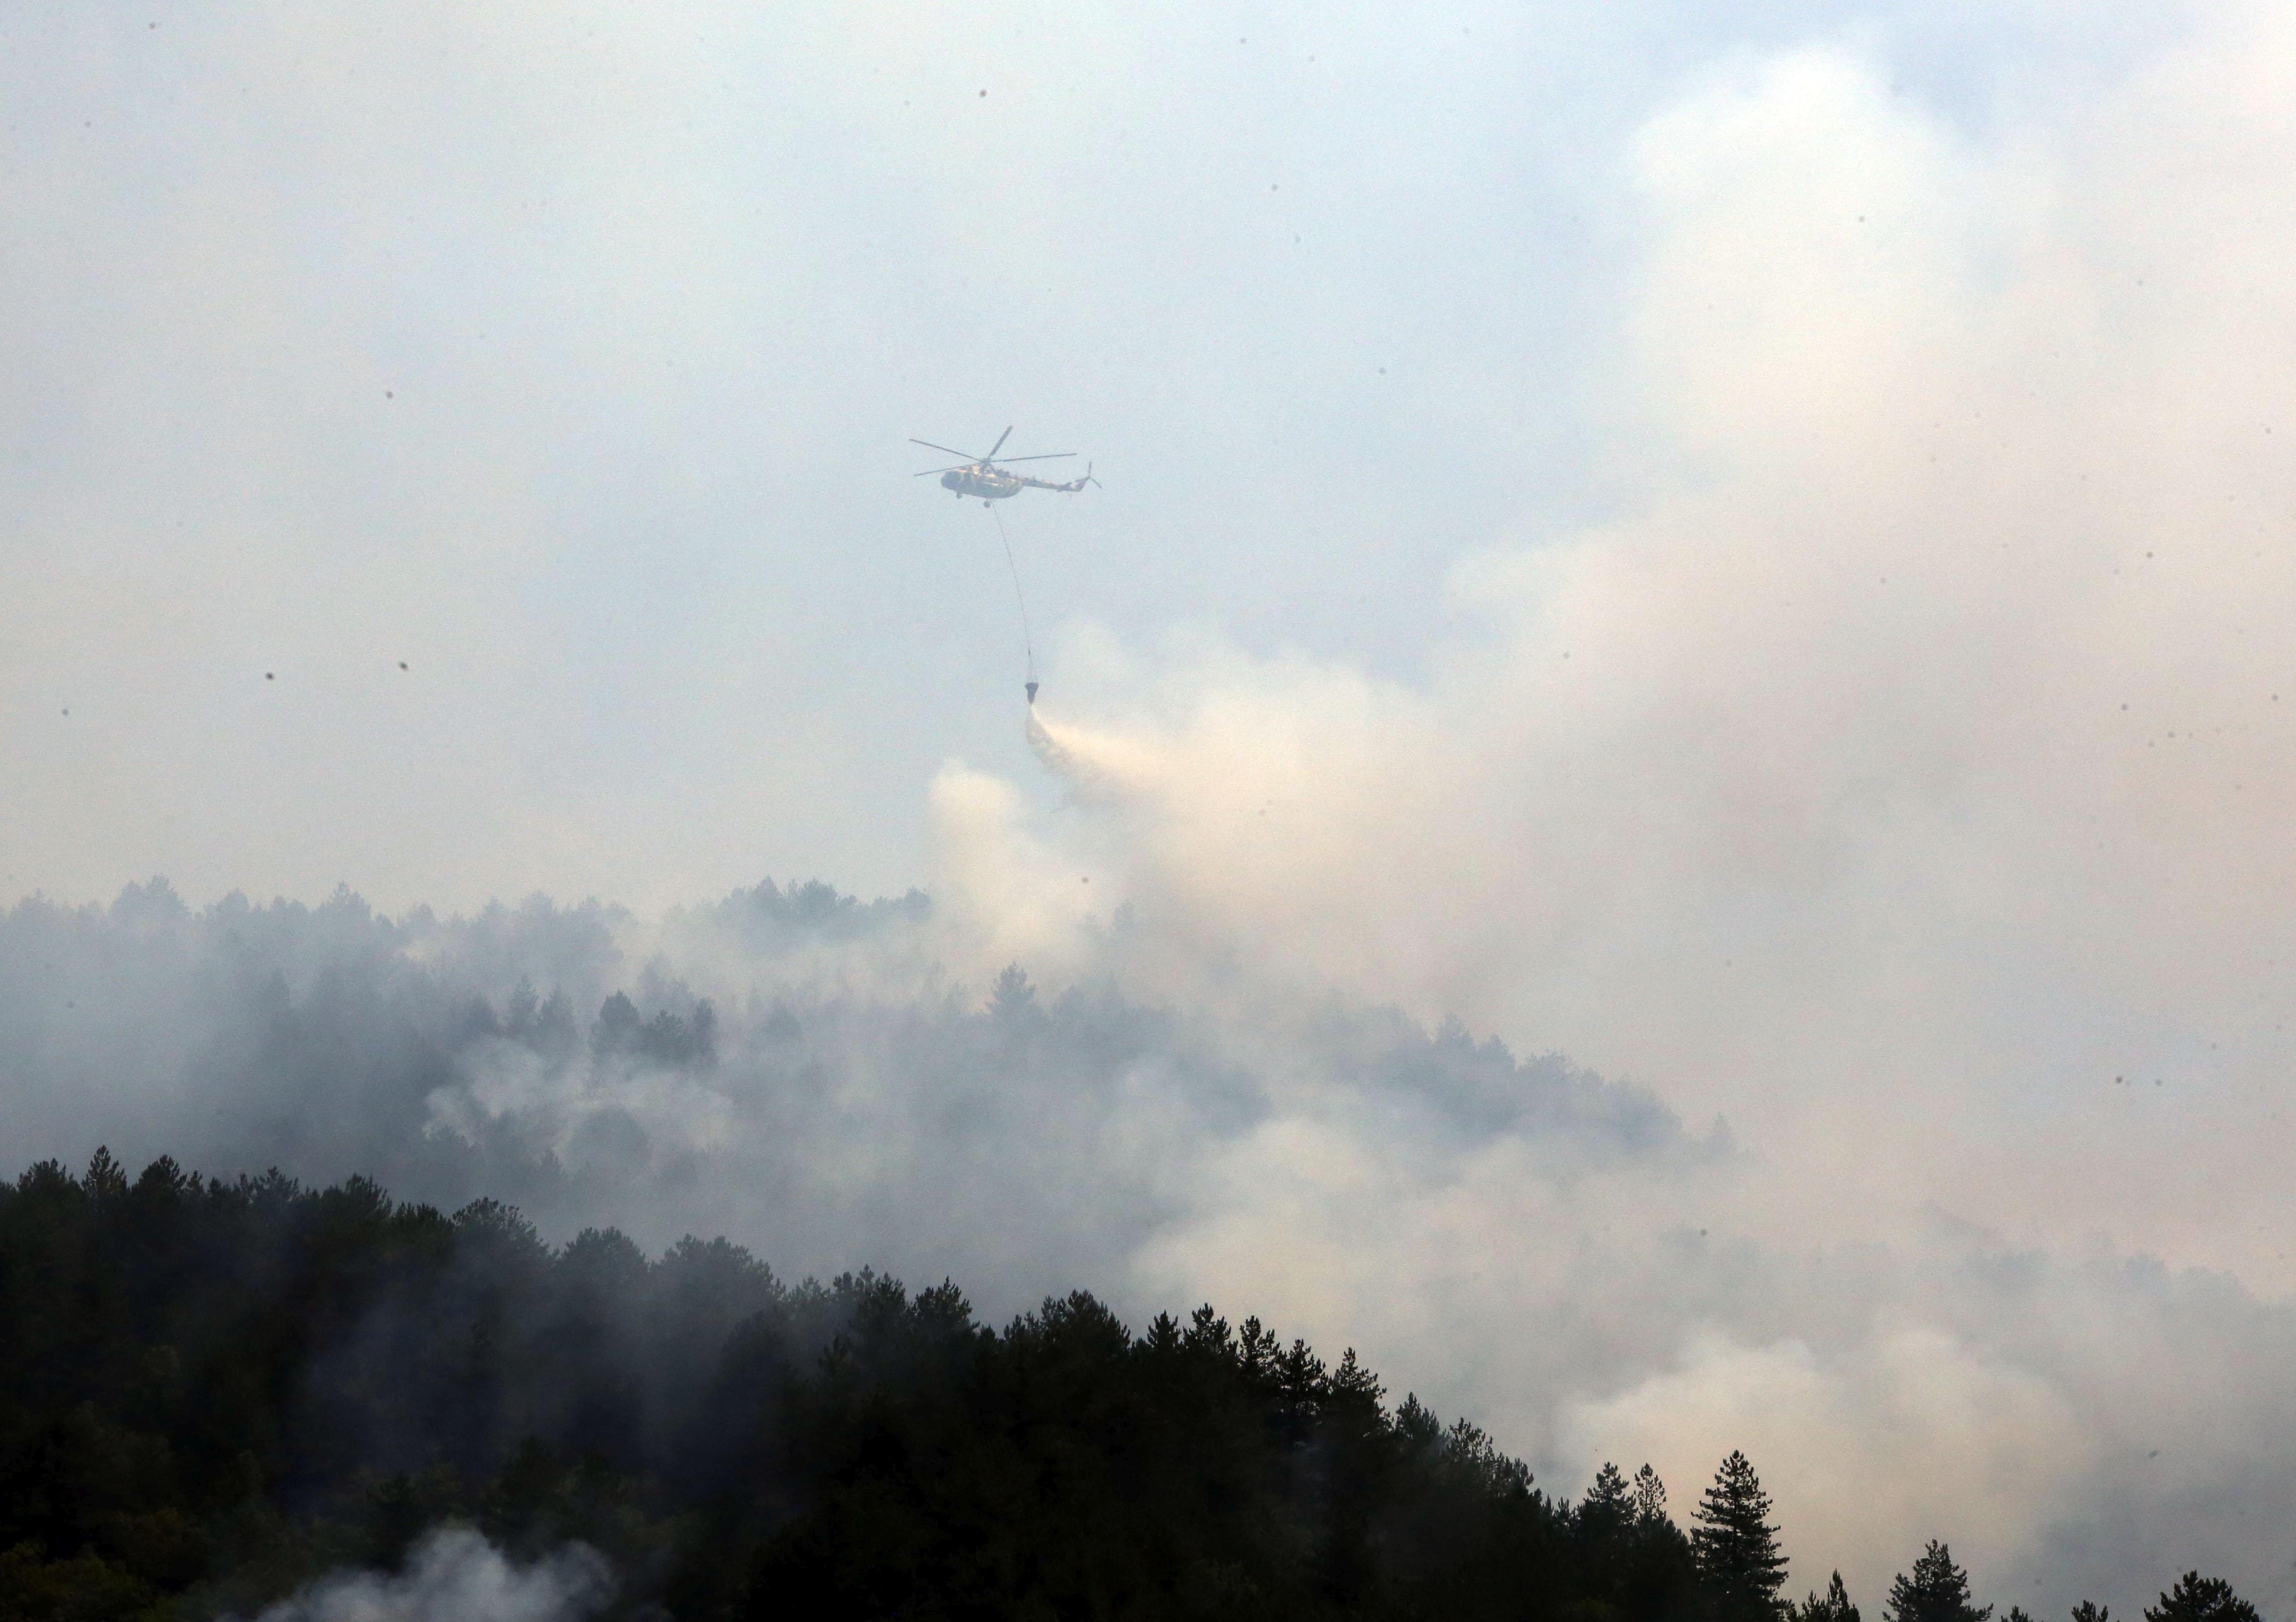 Kastamonu'da orman yangını